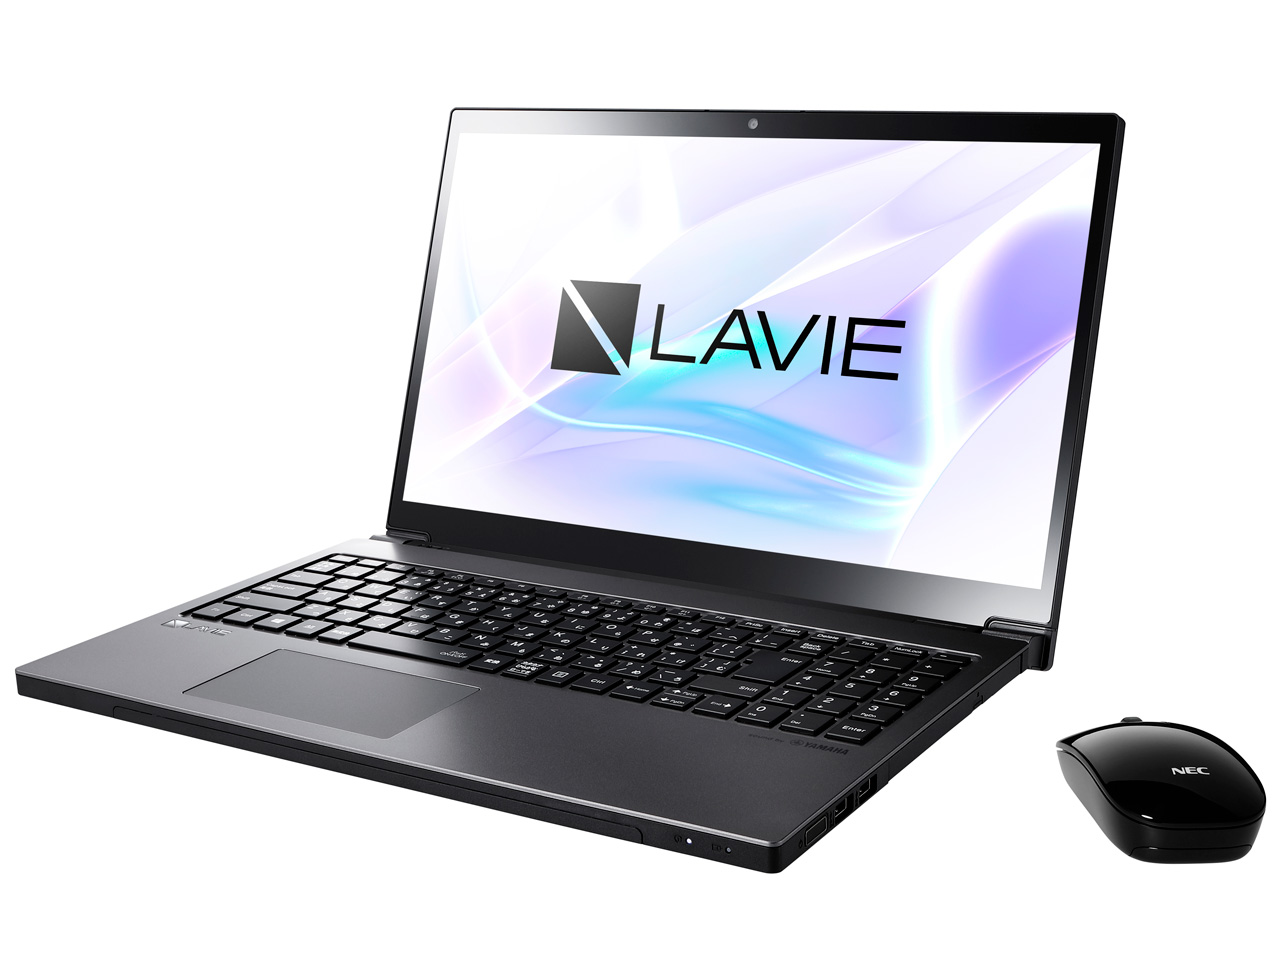 価格.com - LAVIE Note NEXT NX850/LAB PC-NX850LAB [グレイスブラックシルバー] の製品画像